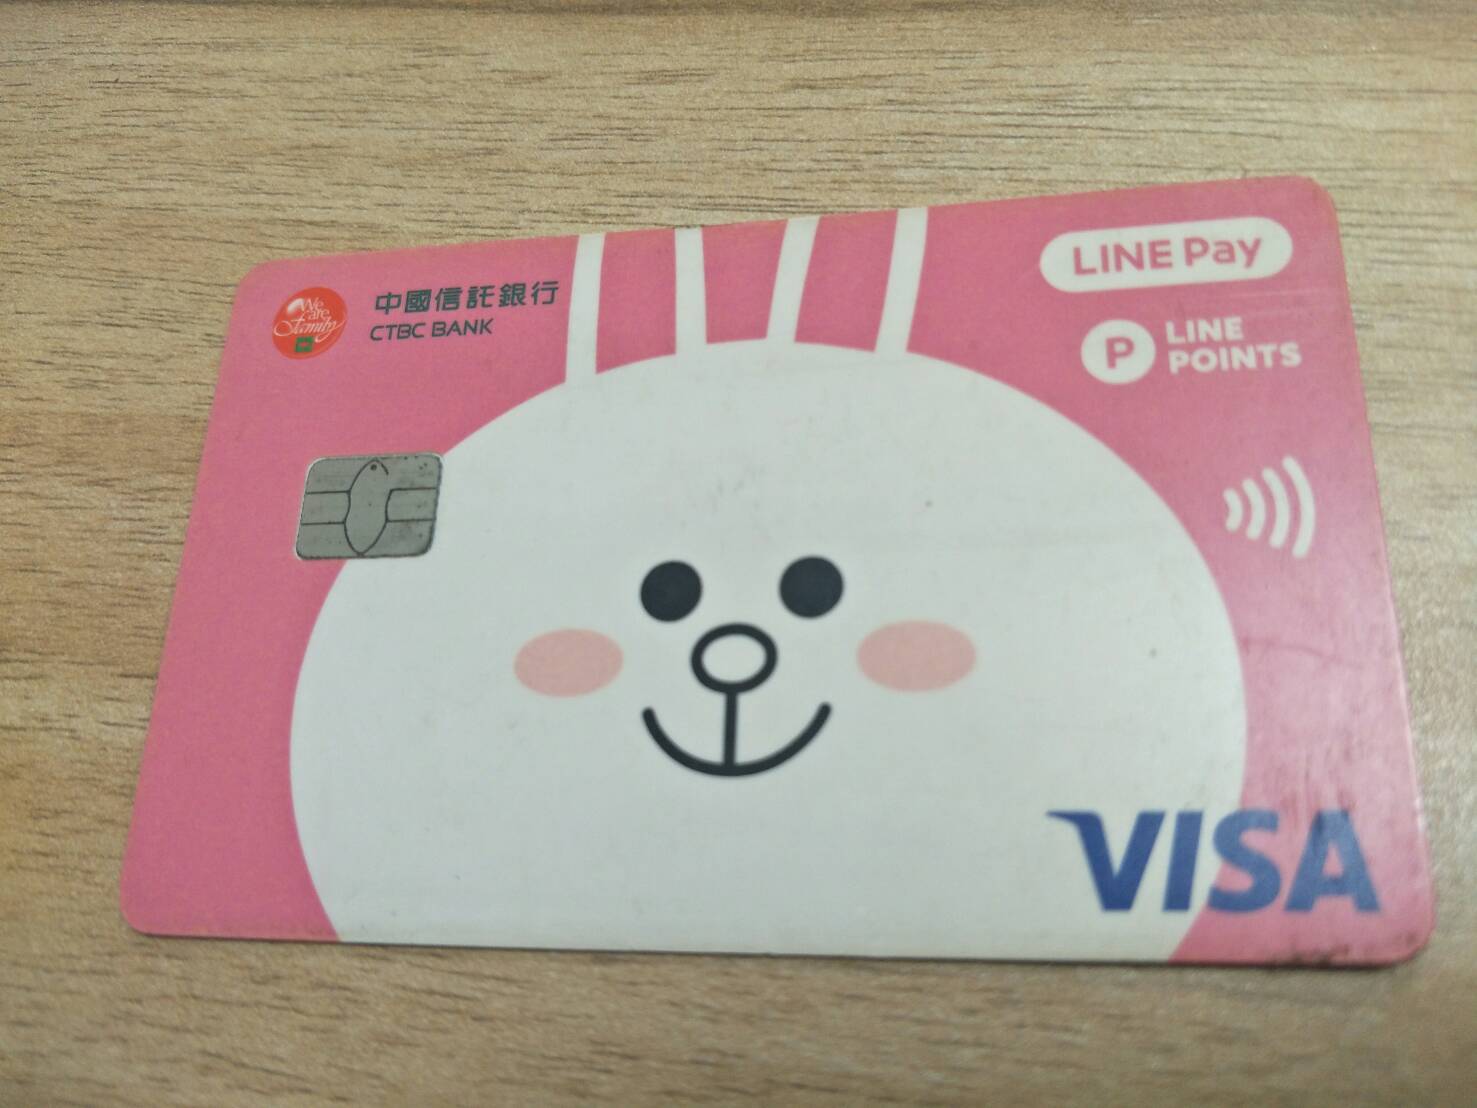 中國信託銀行VISA卡